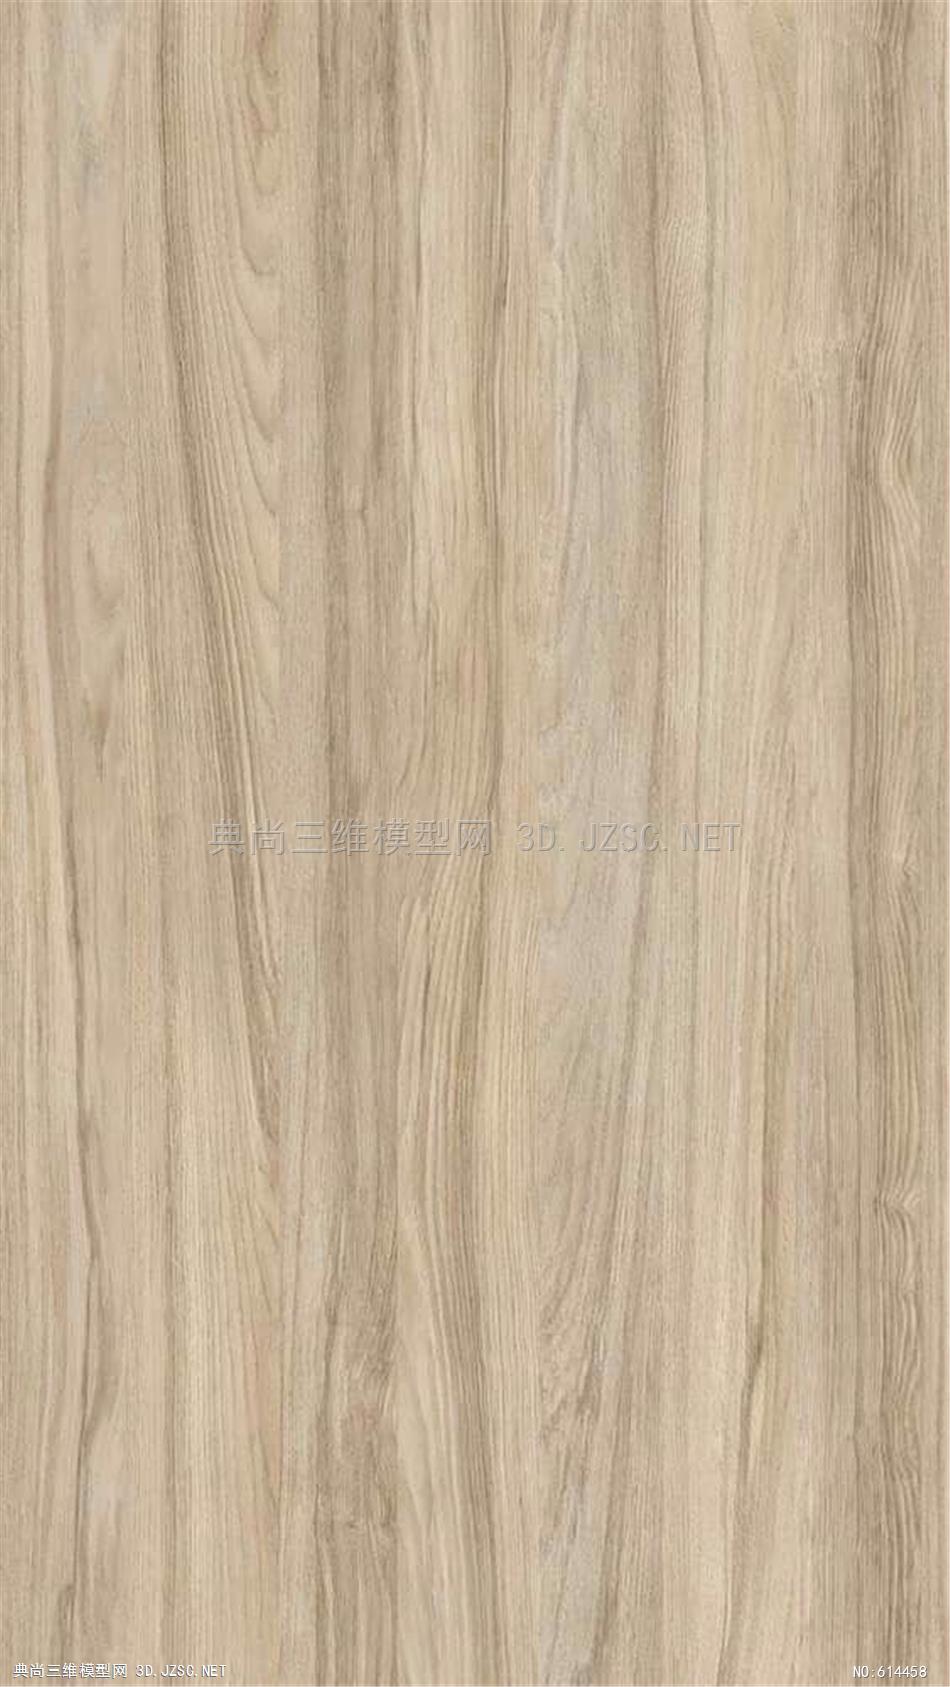 木饰面 木纹 木材  高清材质贴图 (307)